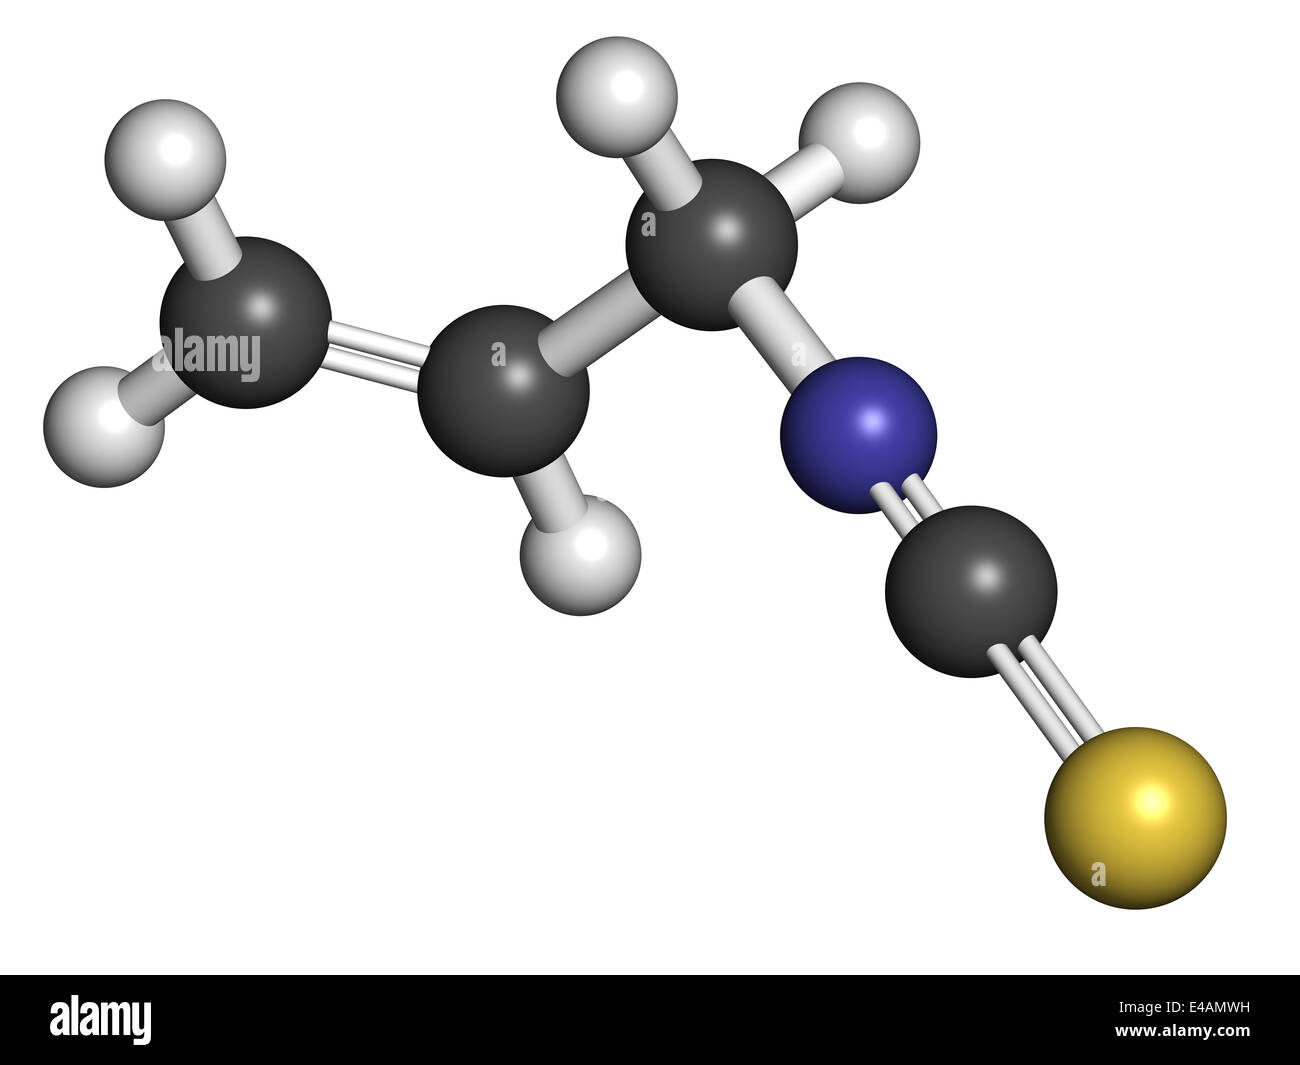 Allyl-Herstellung-Senf Schärfe-Molekül. Verantwortlich für den scharfen Geschmack von Senf, Wasabi und Rettich. Stockfoto